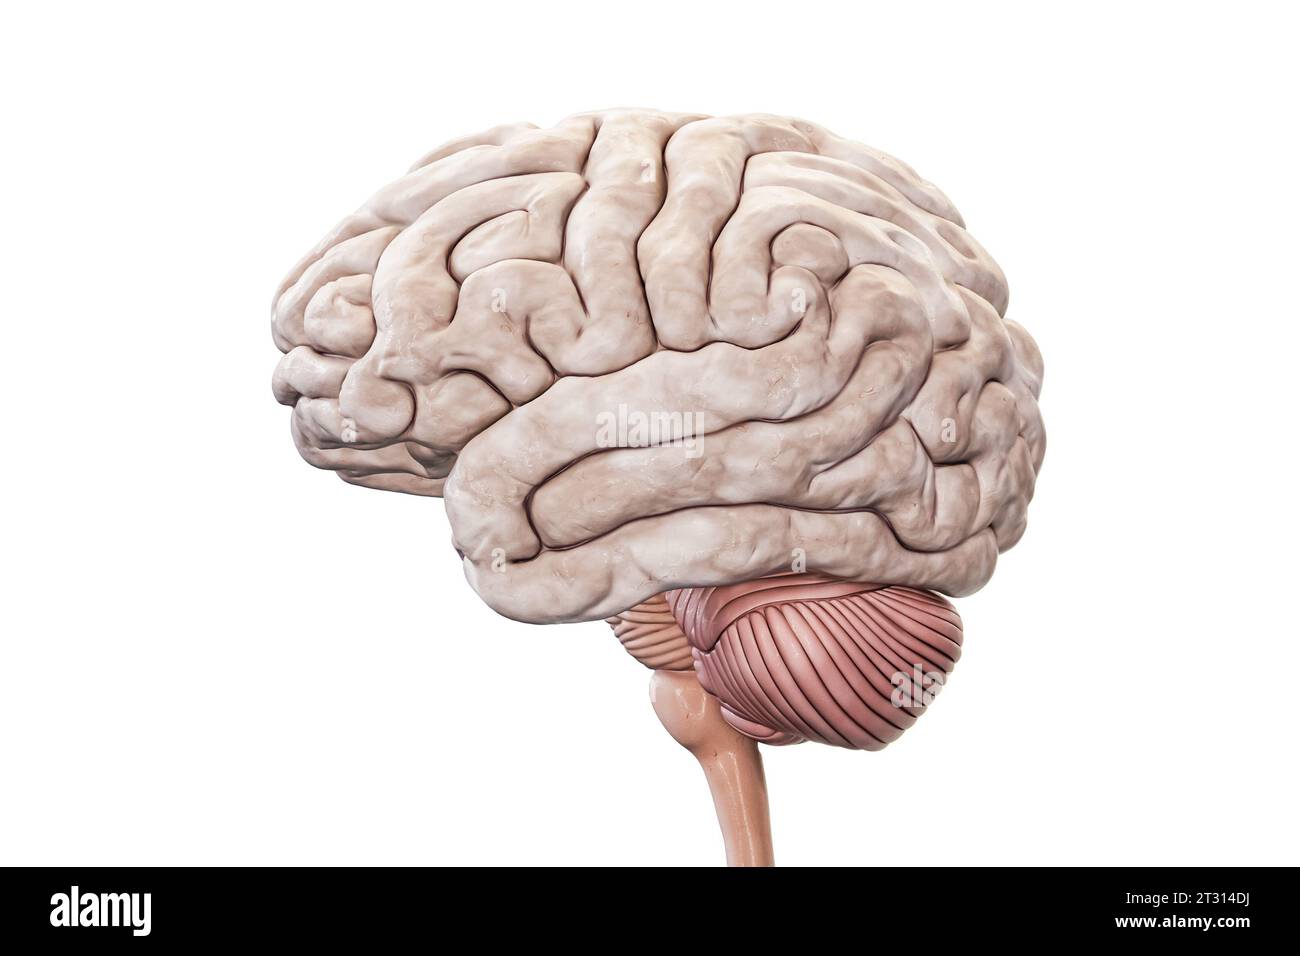 Menschliches Gehirn mit Kortex-, Kleinhirn- und Hirnstammprofil isoliert auf weißem Hintergrund genaue 3D-Darstellung. Anatomie, Neurologie, n Stockfoto